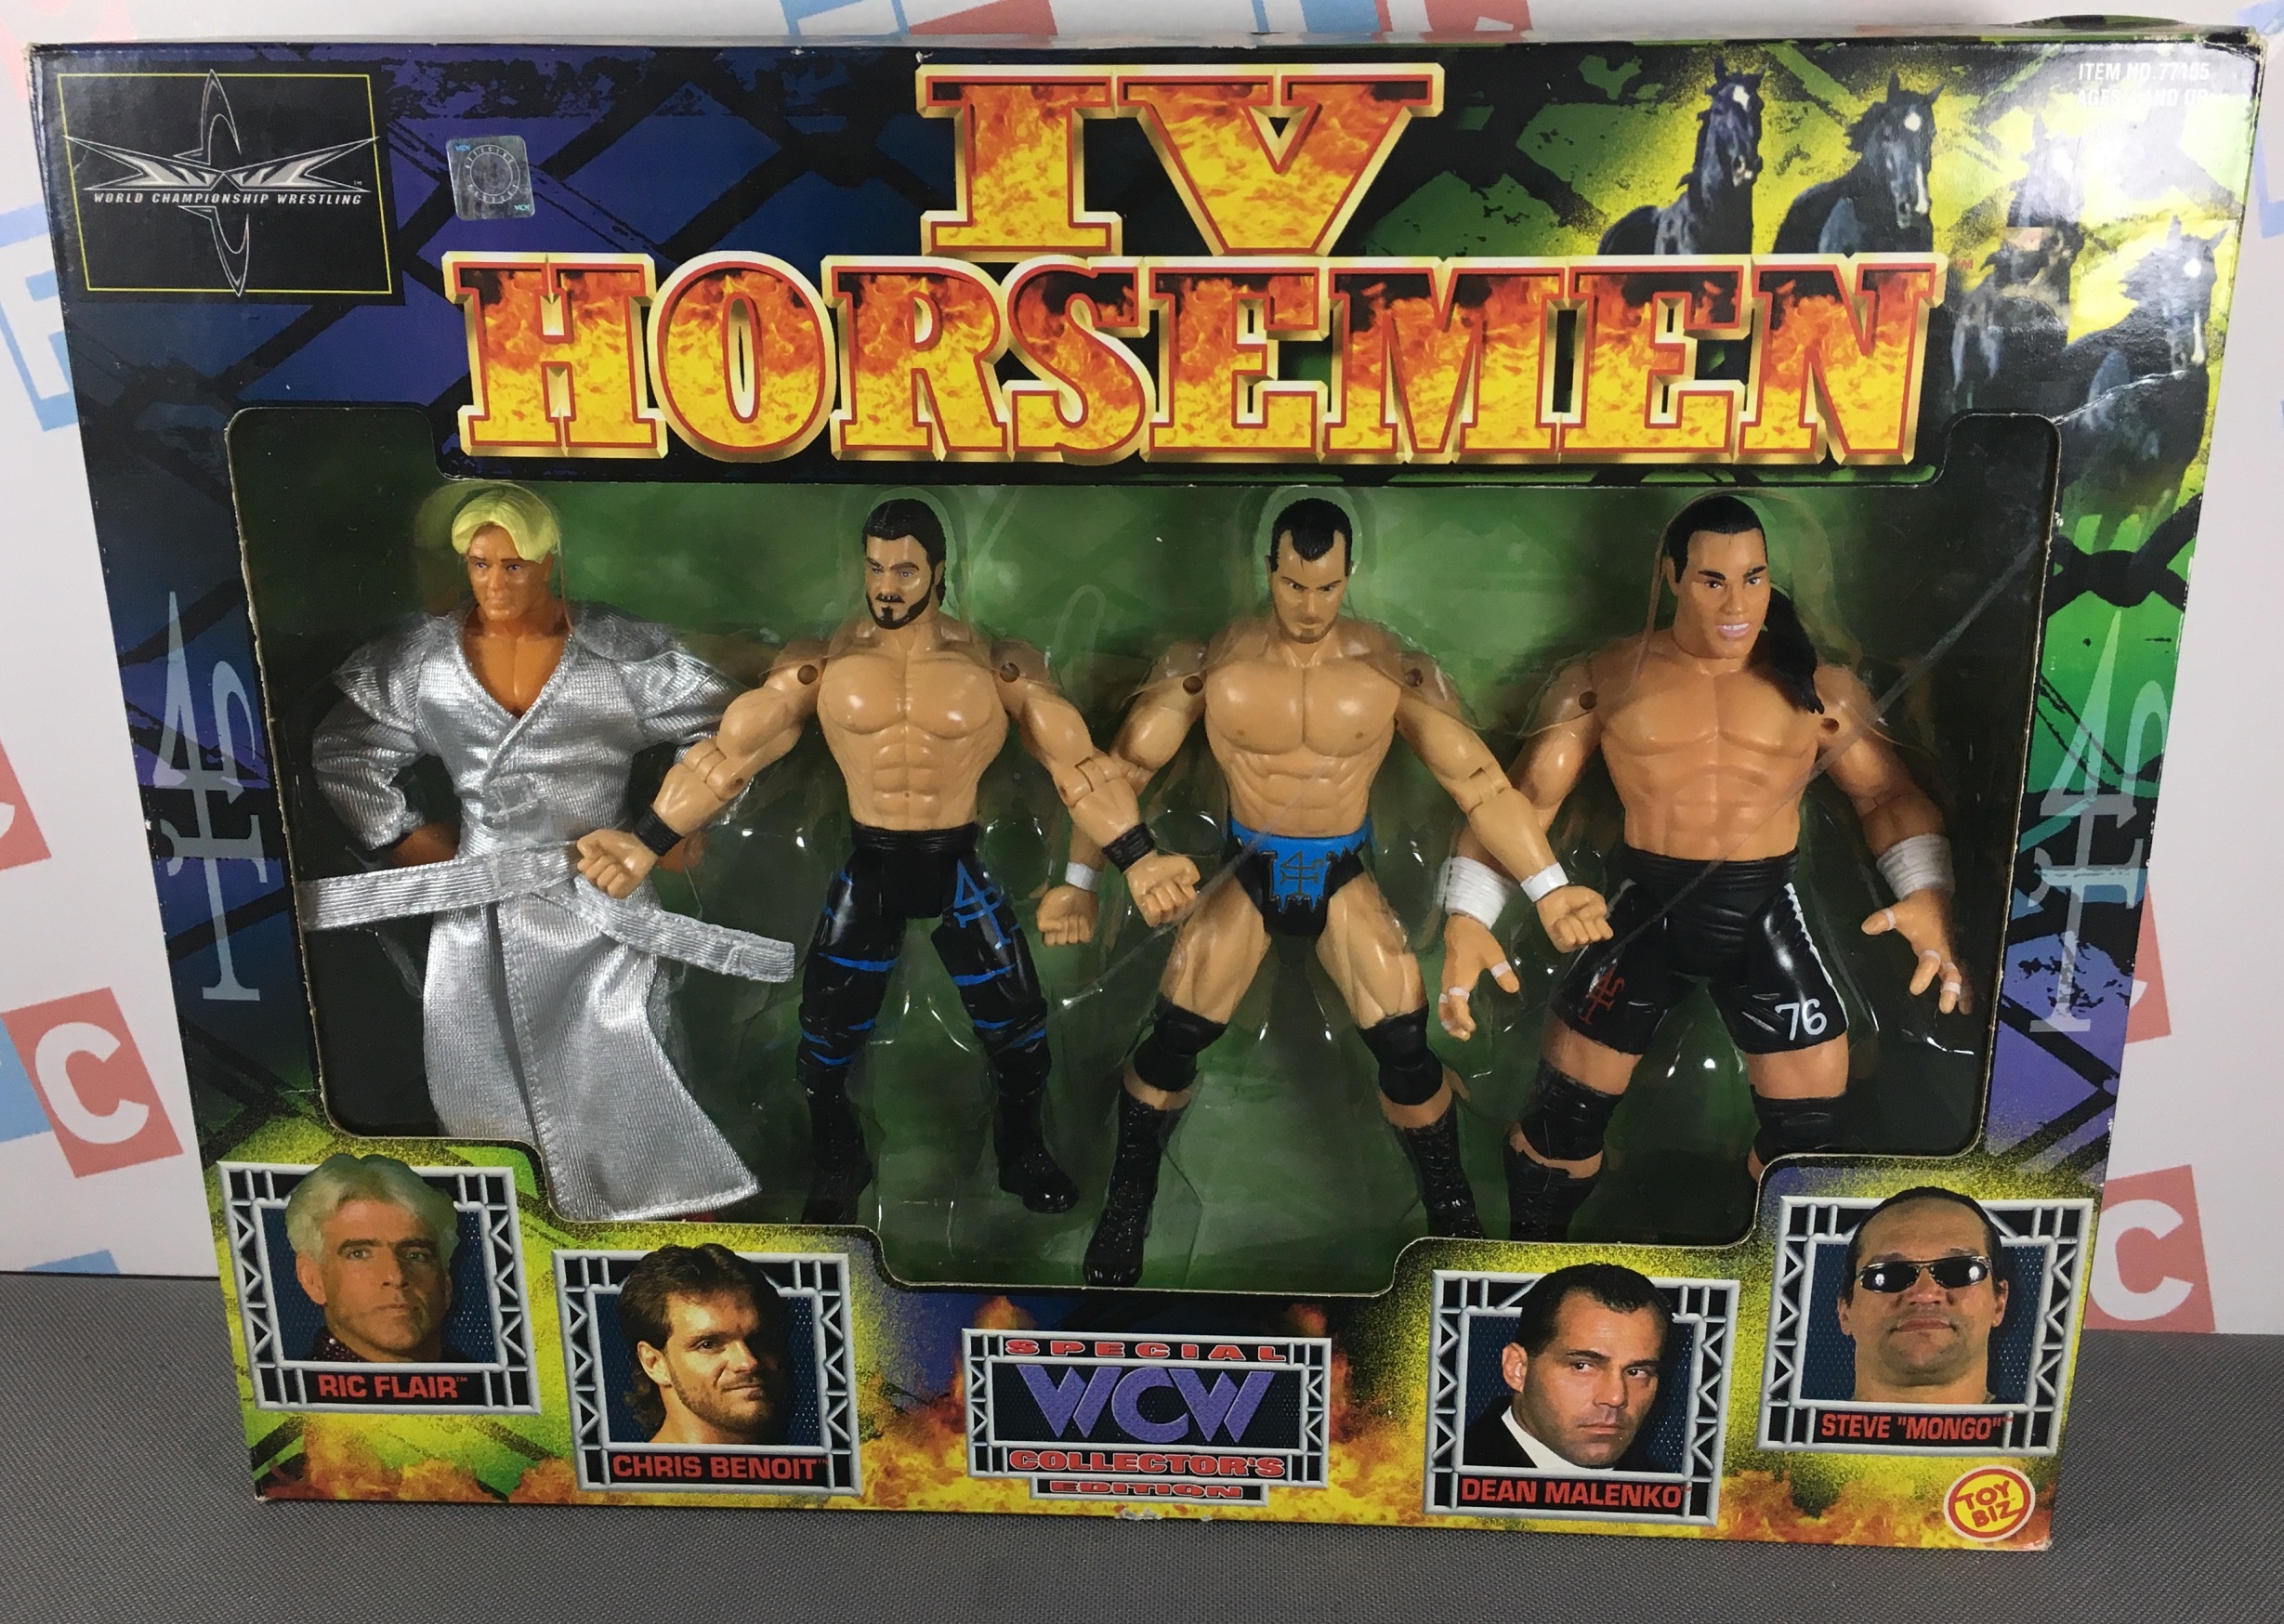 IV Horsemen: Ric Flair, Chris Benoit, Dean Malenko, and Steve McMichael Mongo